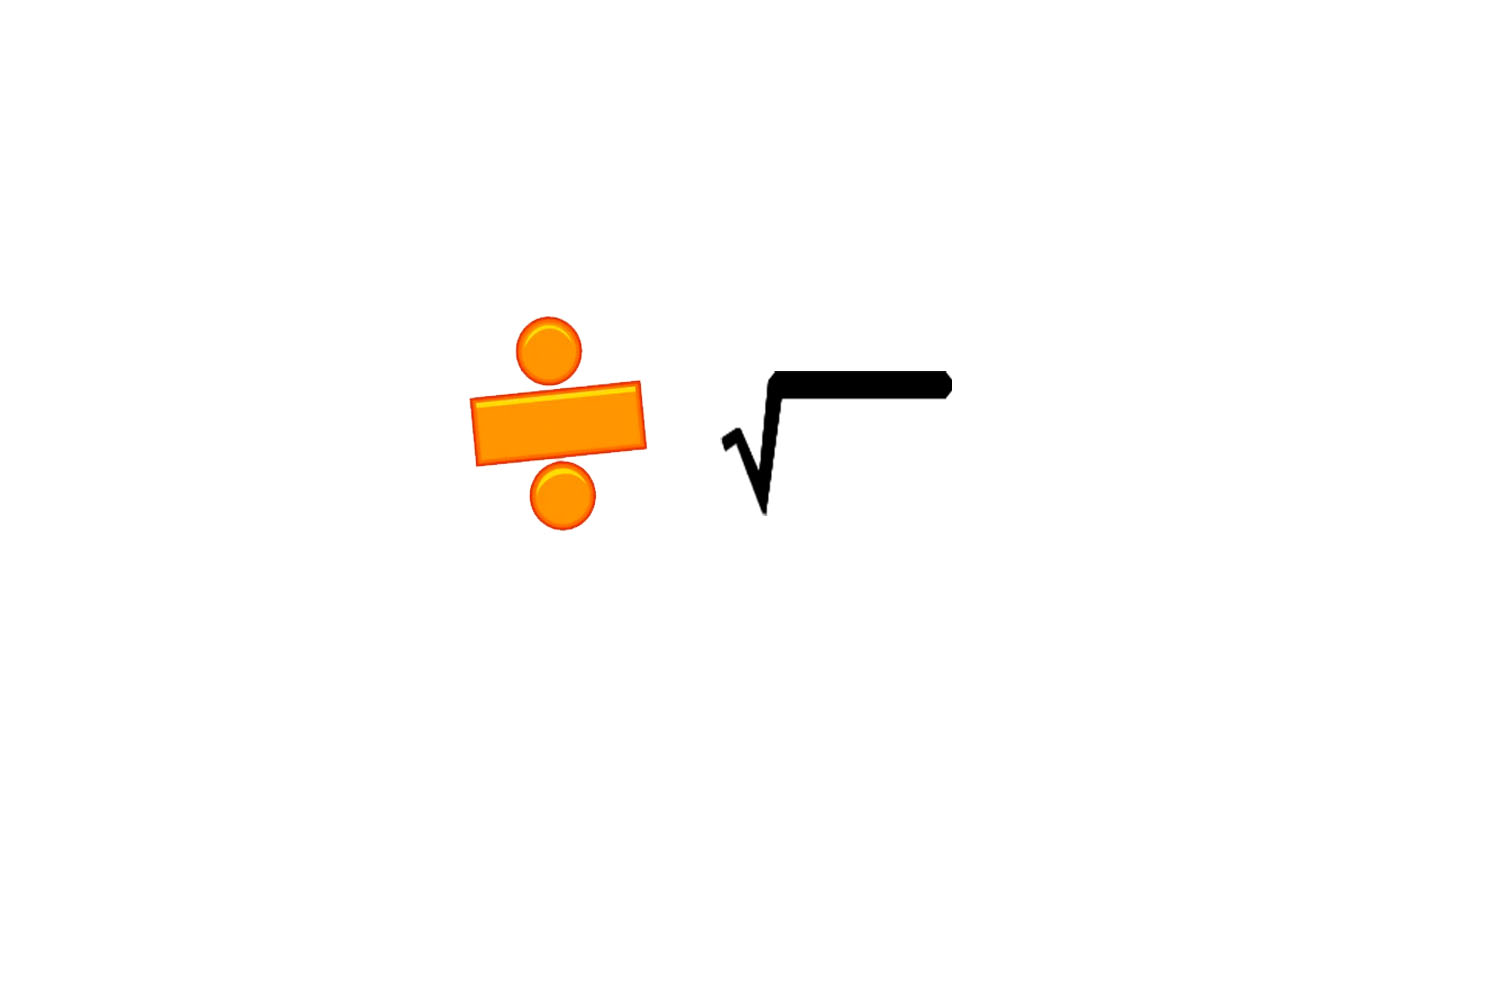 Division symbol